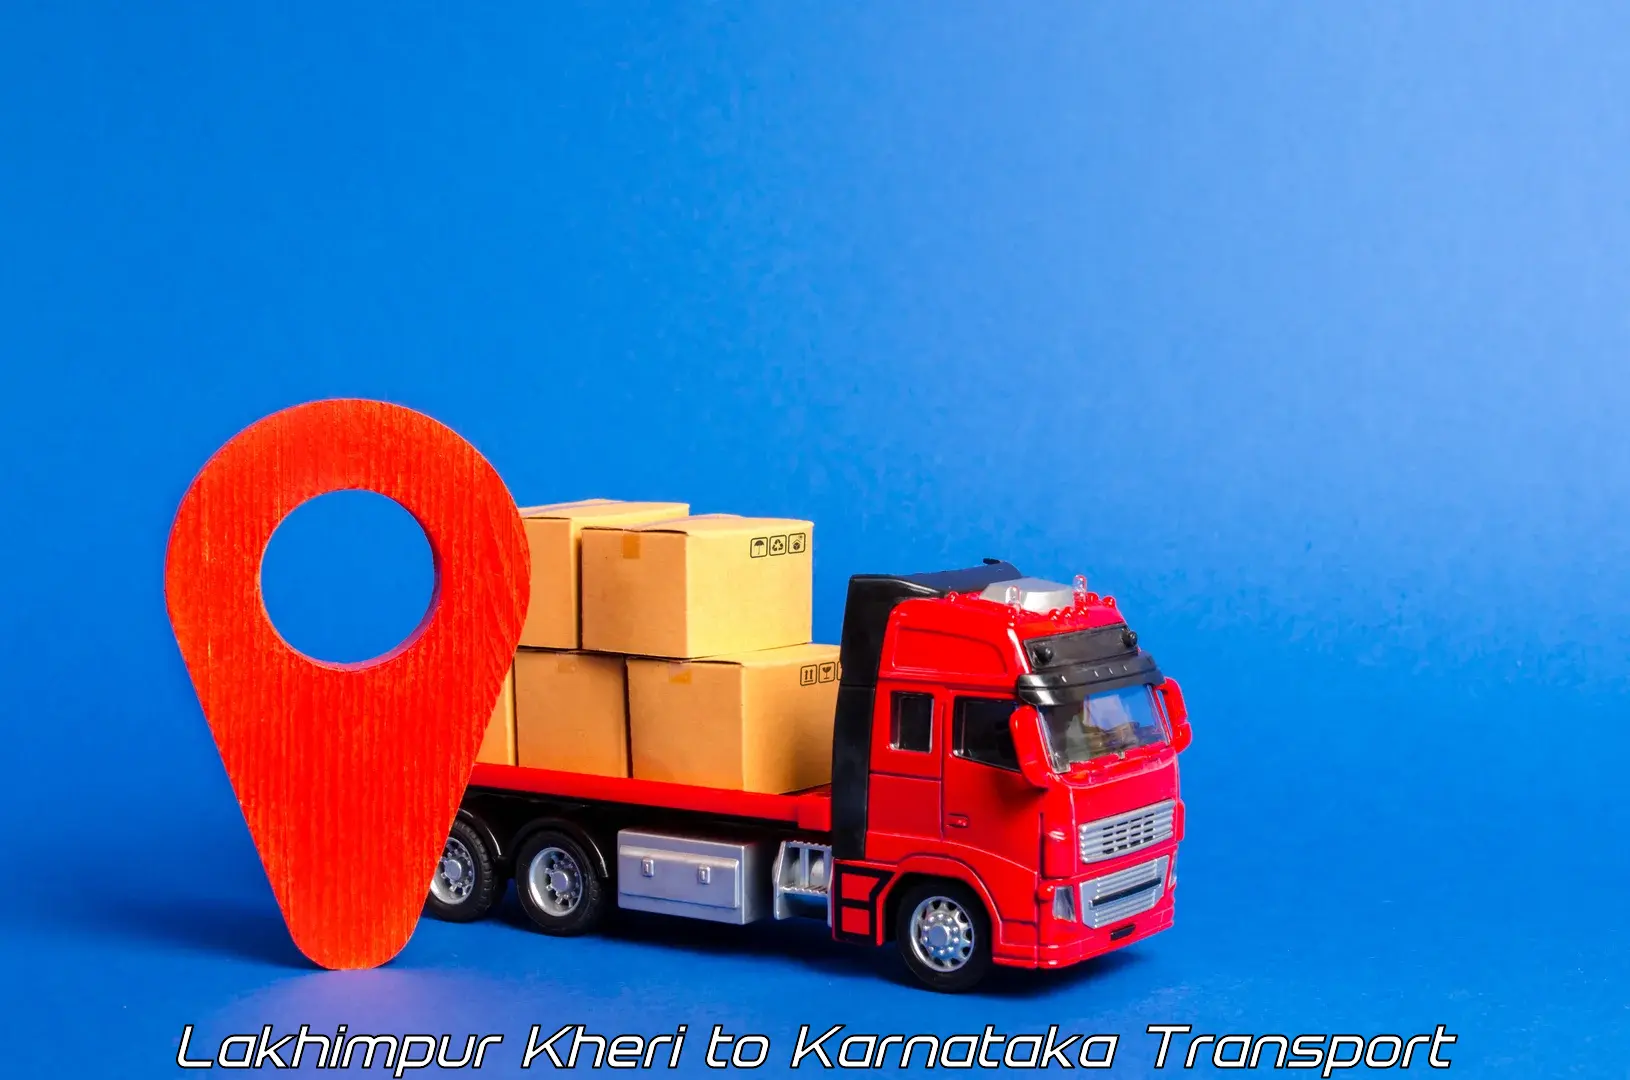 Shipping services Lakhimpur Kheri to Dabaspet